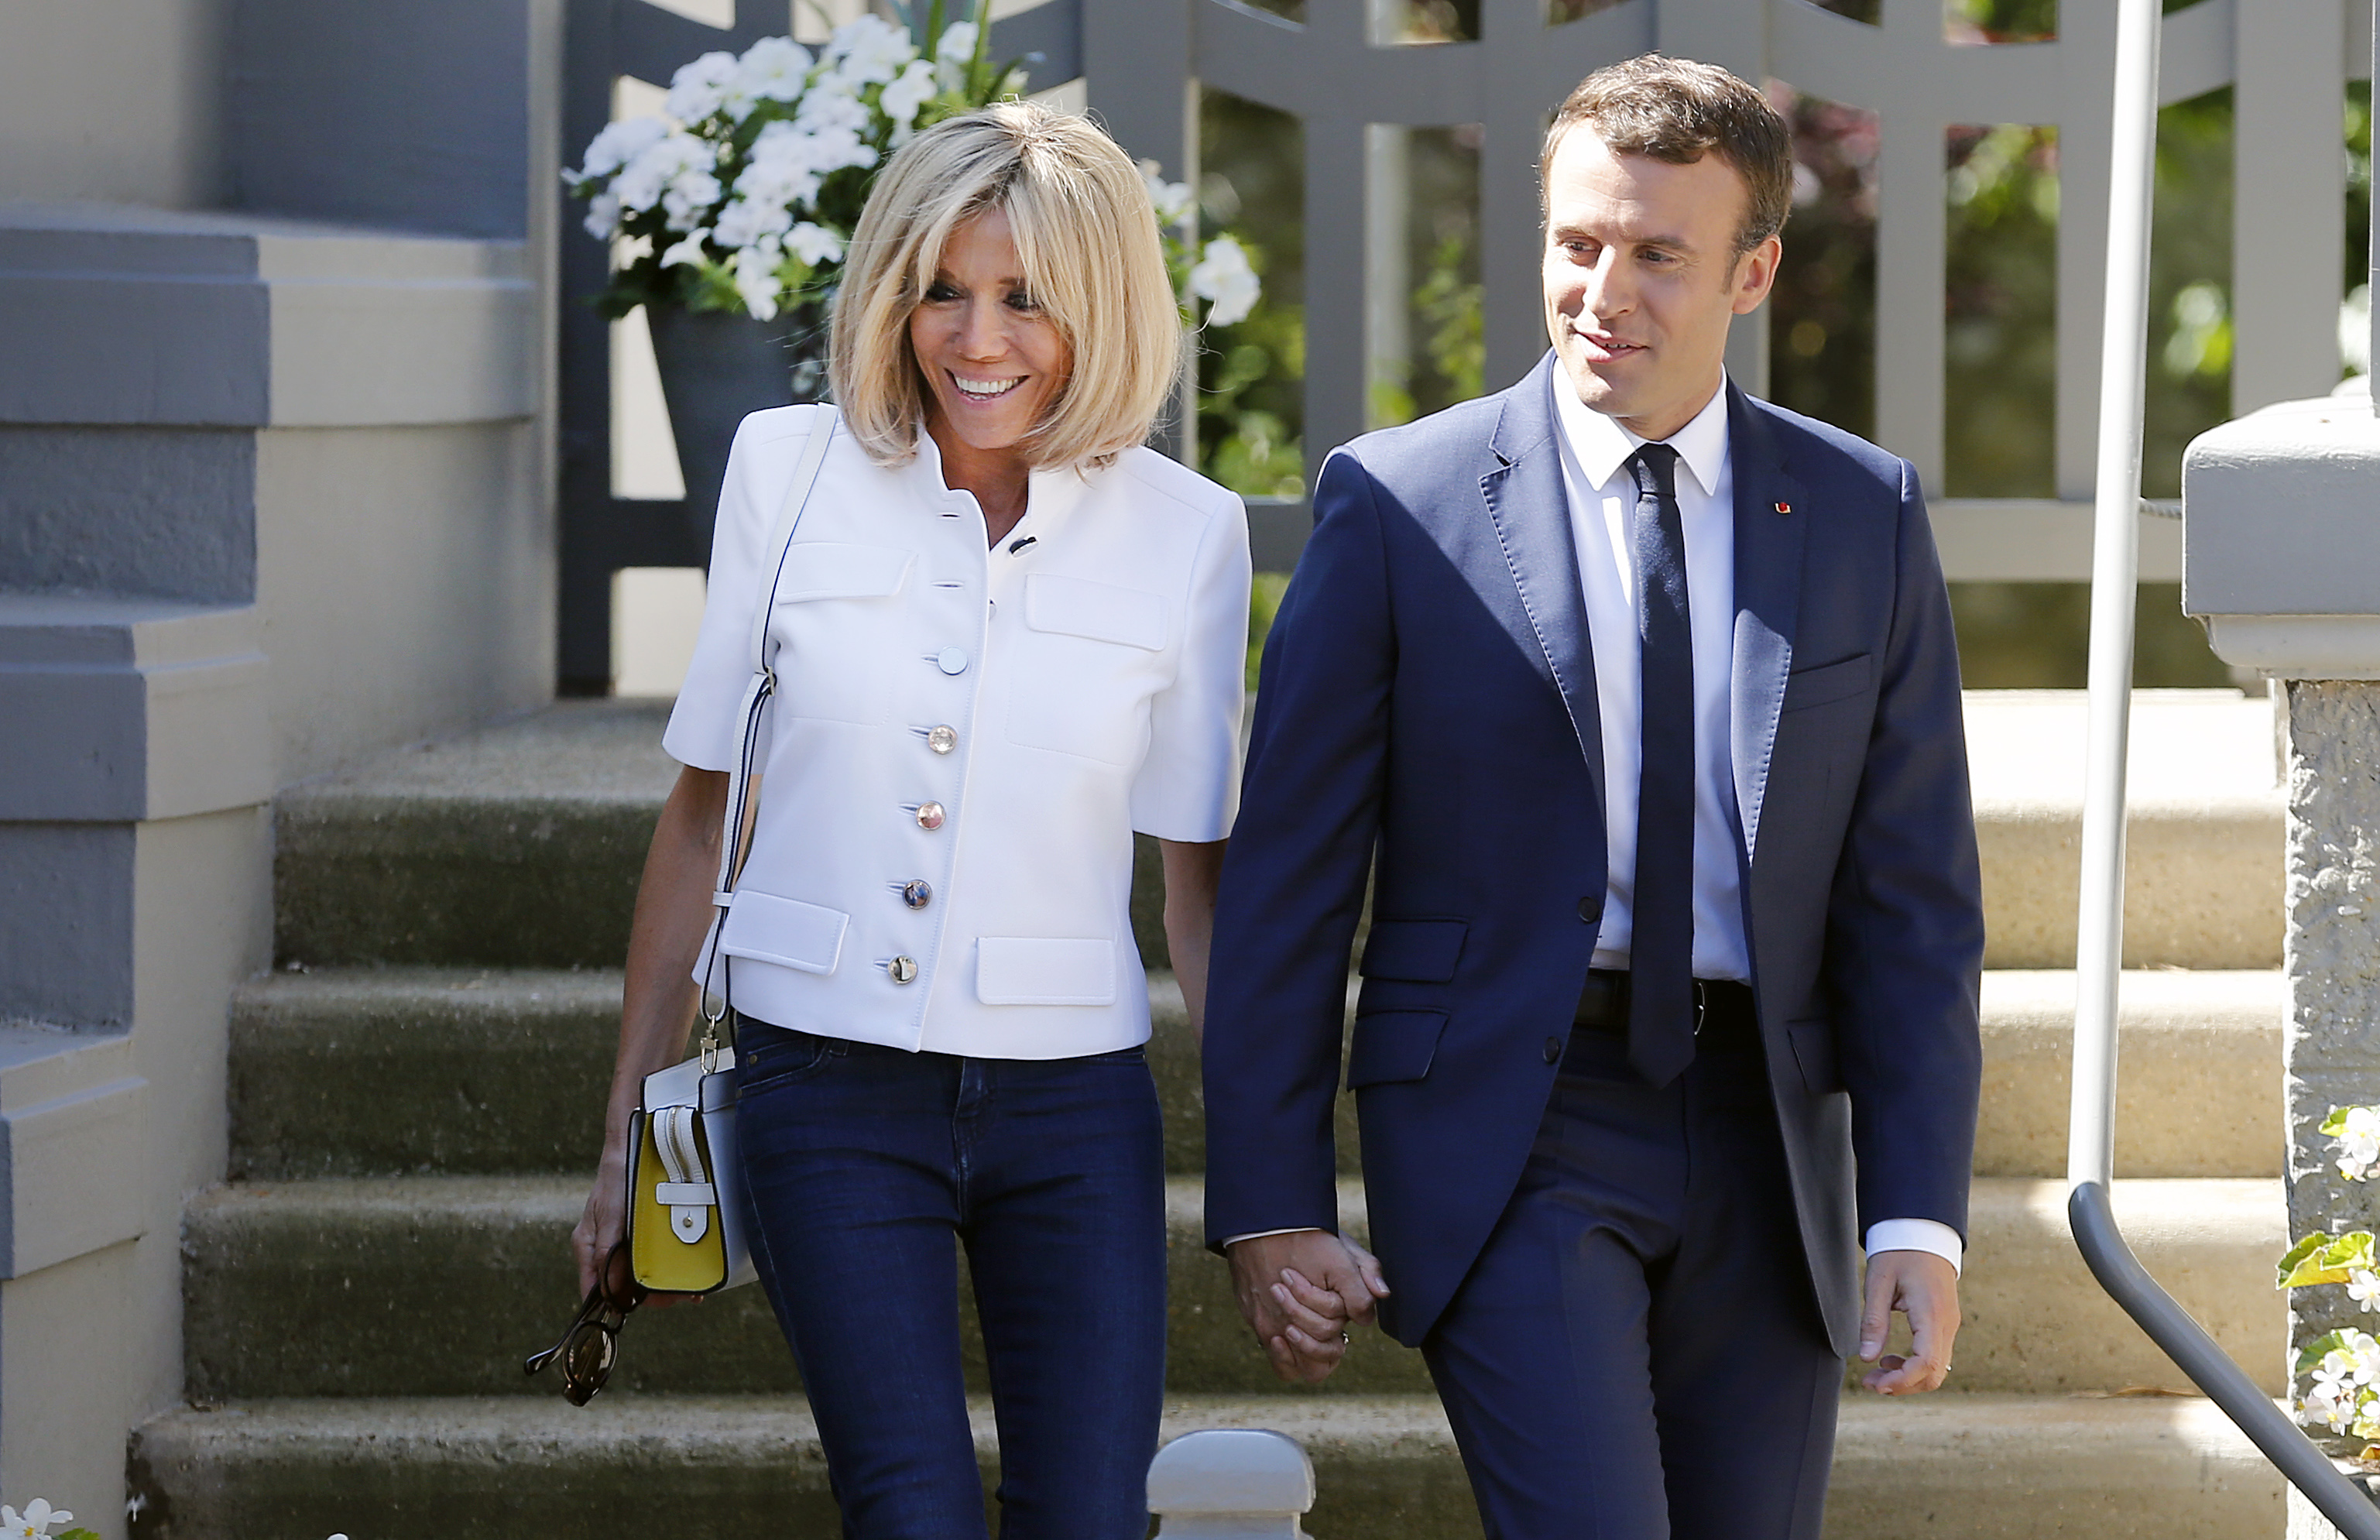 Le moment câlin de Brigitte et Emmanuel Macron : La photo très intime qui fait le tour des réseaux sociaux